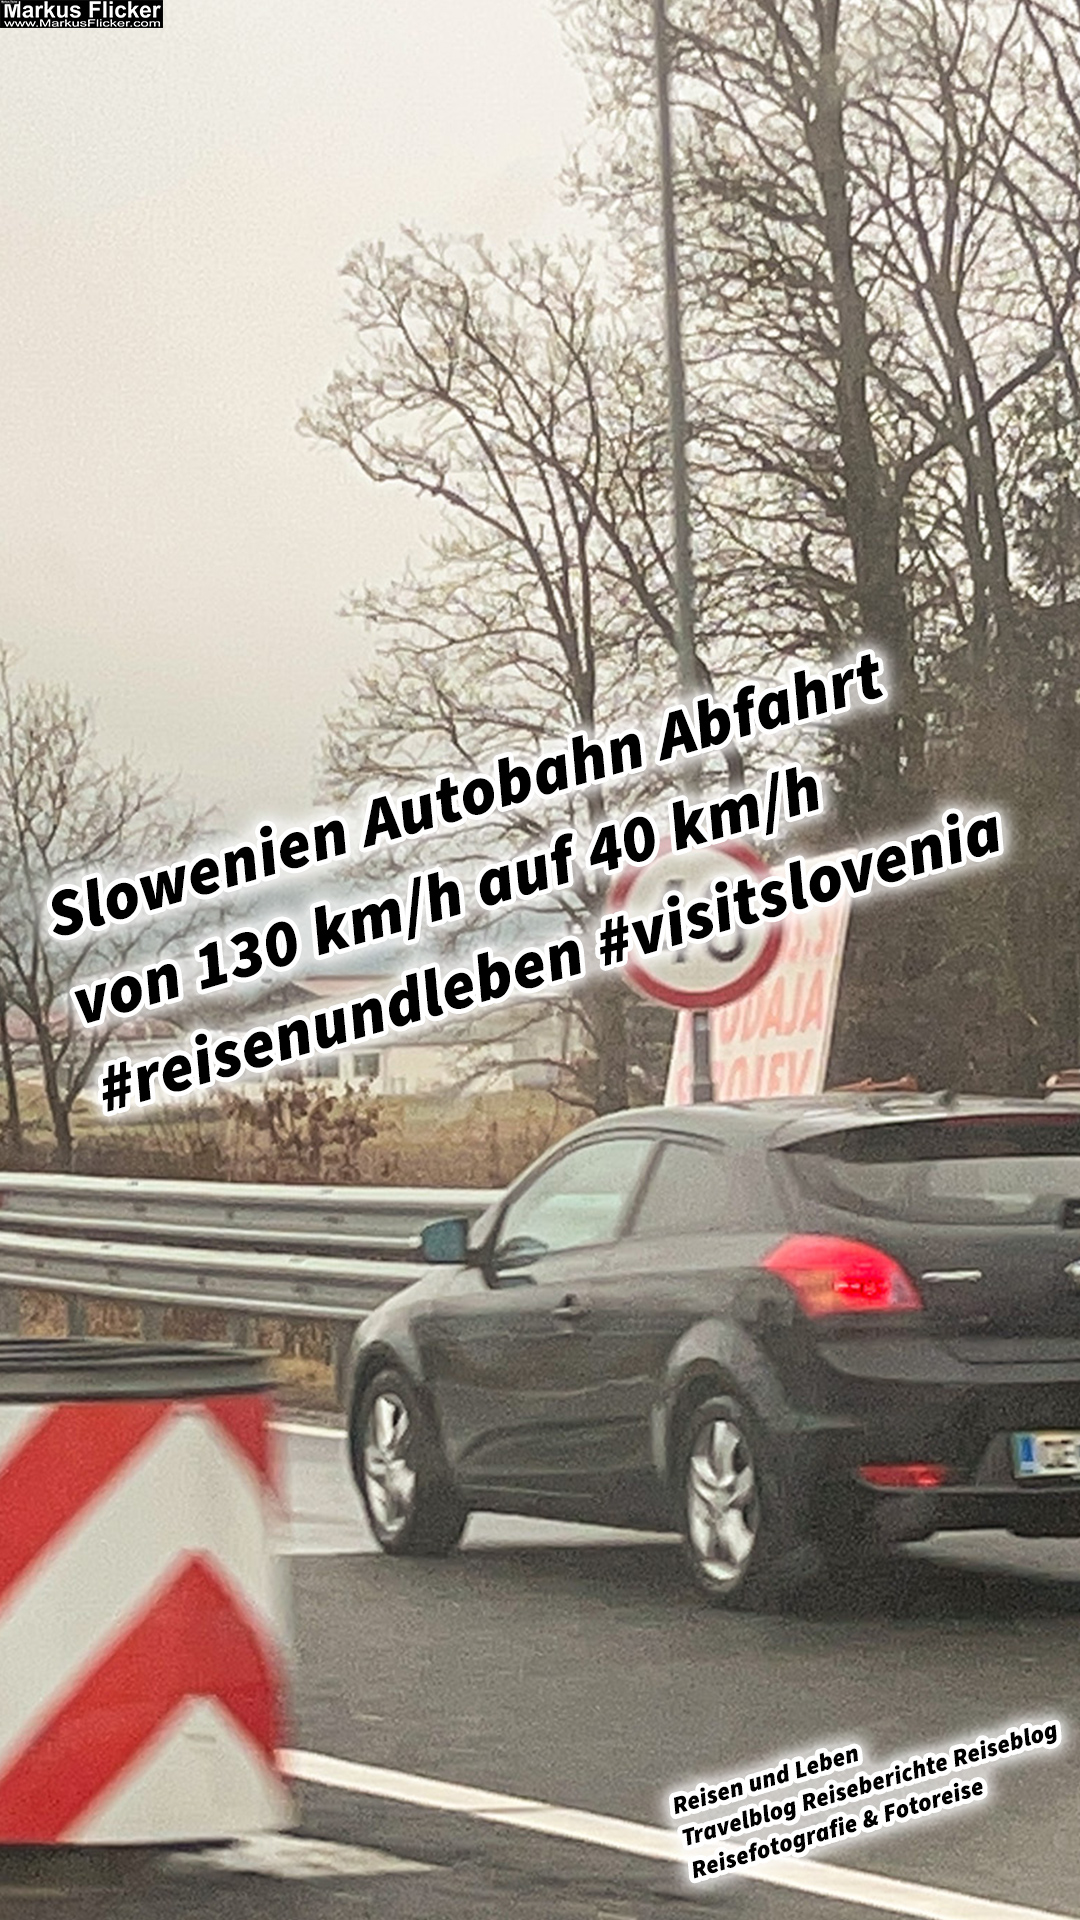 Slowenien Autobahn Abfahrt von 130 km/h auf 40 km/h #visitslovenia